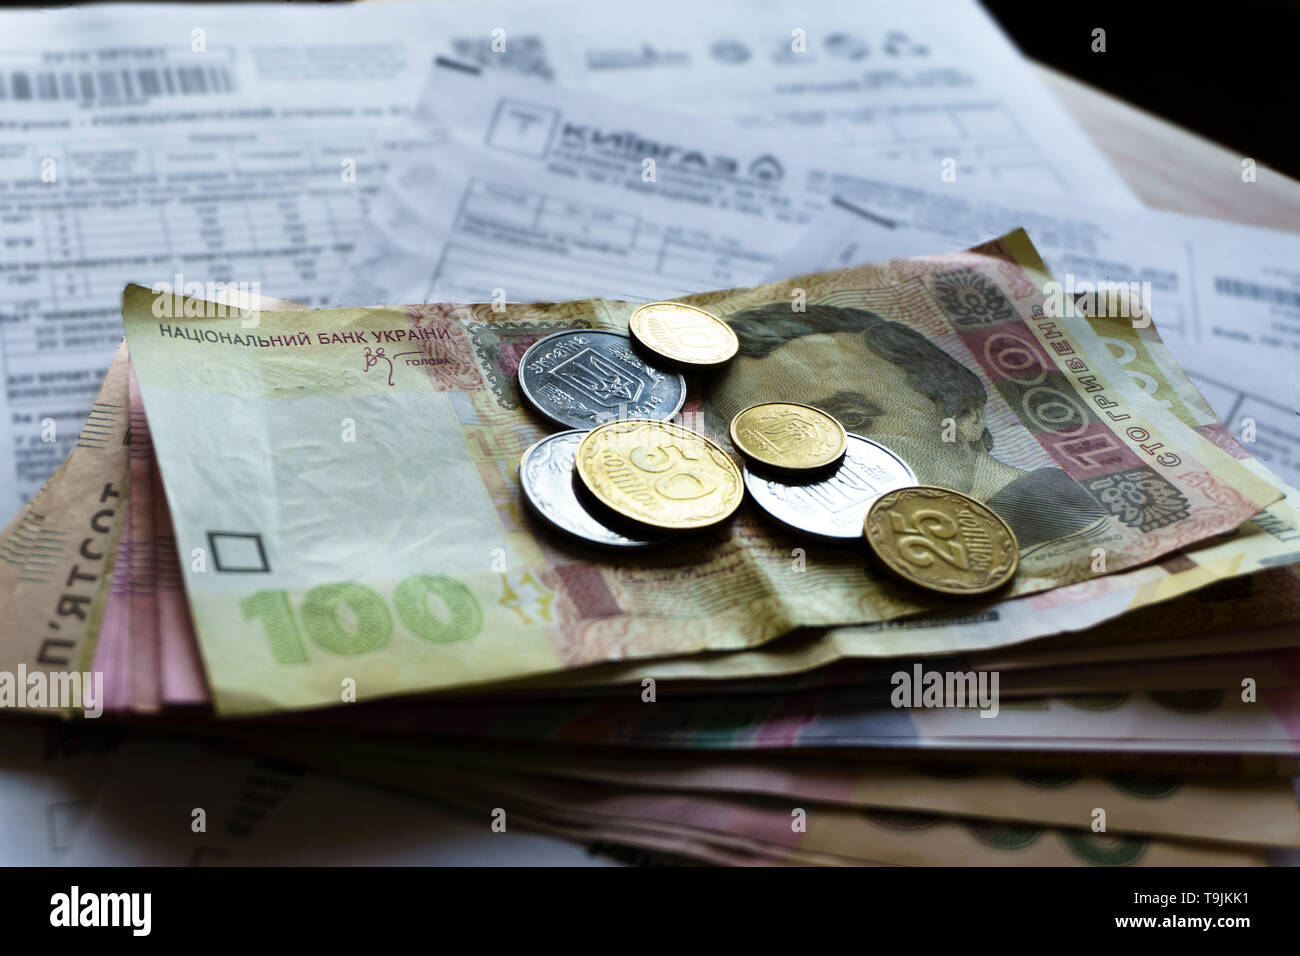 Hryvnia ukrainien de l'argent et des pièces d'un cent fond de bois, d'une facture. Banque D'Images